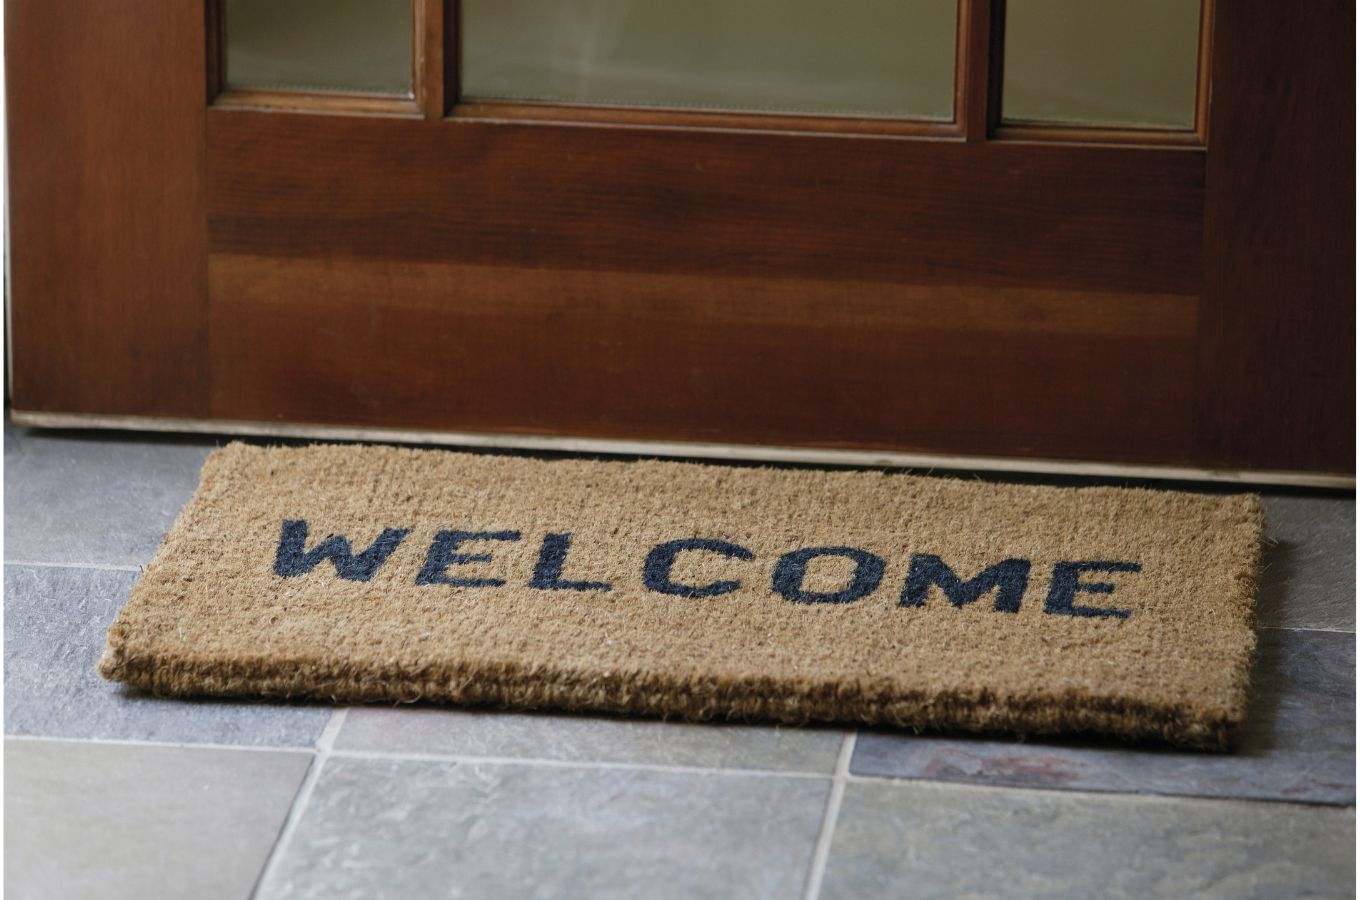 a welcome mat